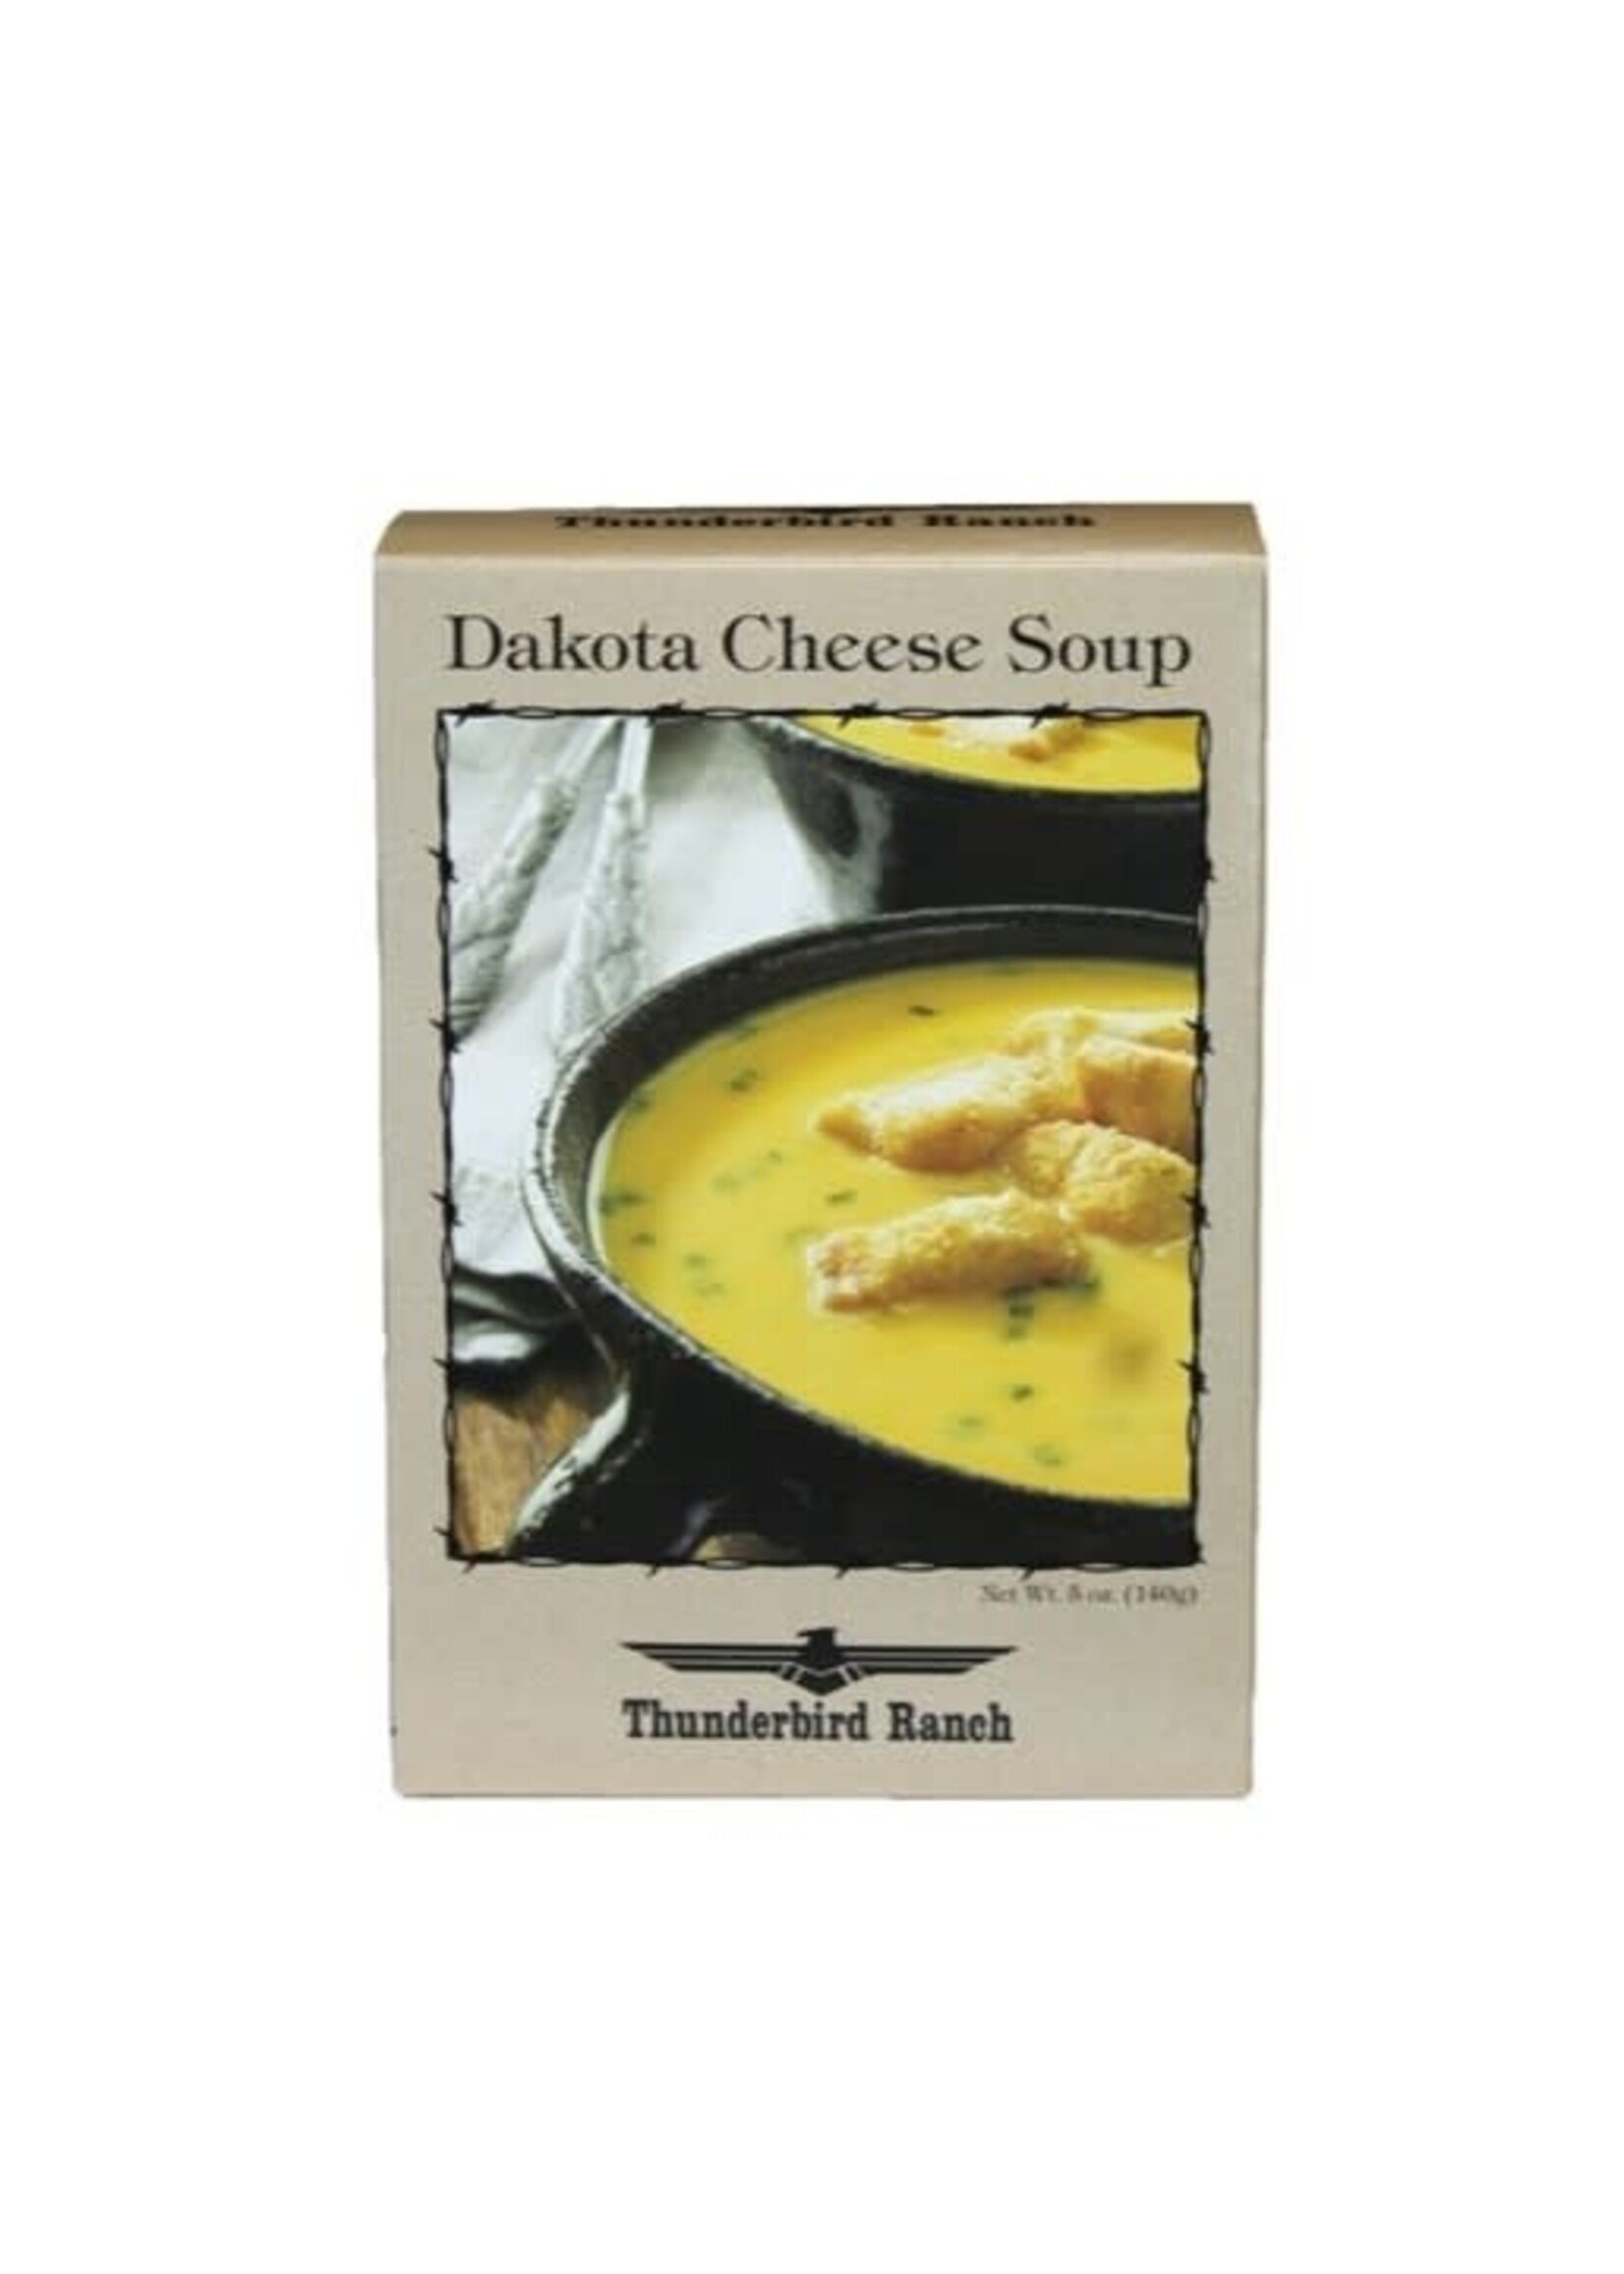 Dakota Cheese Soup Mix 5oz